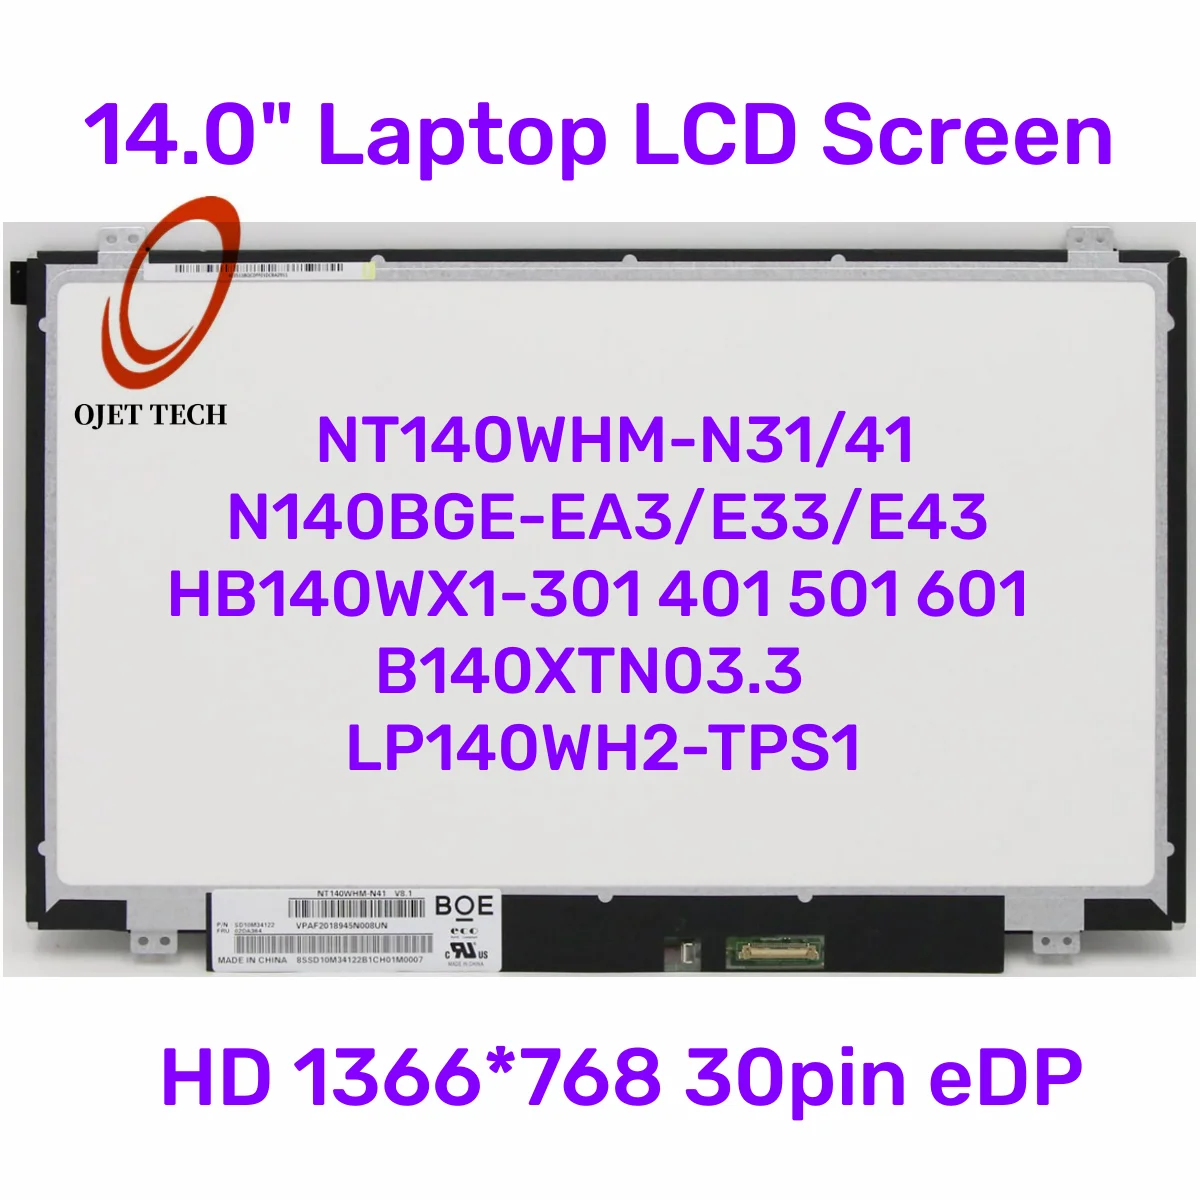 

14.0" Laptop LCD Screen NT140WHM-N31/41 N140BGE-EA3/E33/E43 HB140WX1-301 401 For ThinkPad T440 T450 T460 T470 T480 HD 30pin eDP